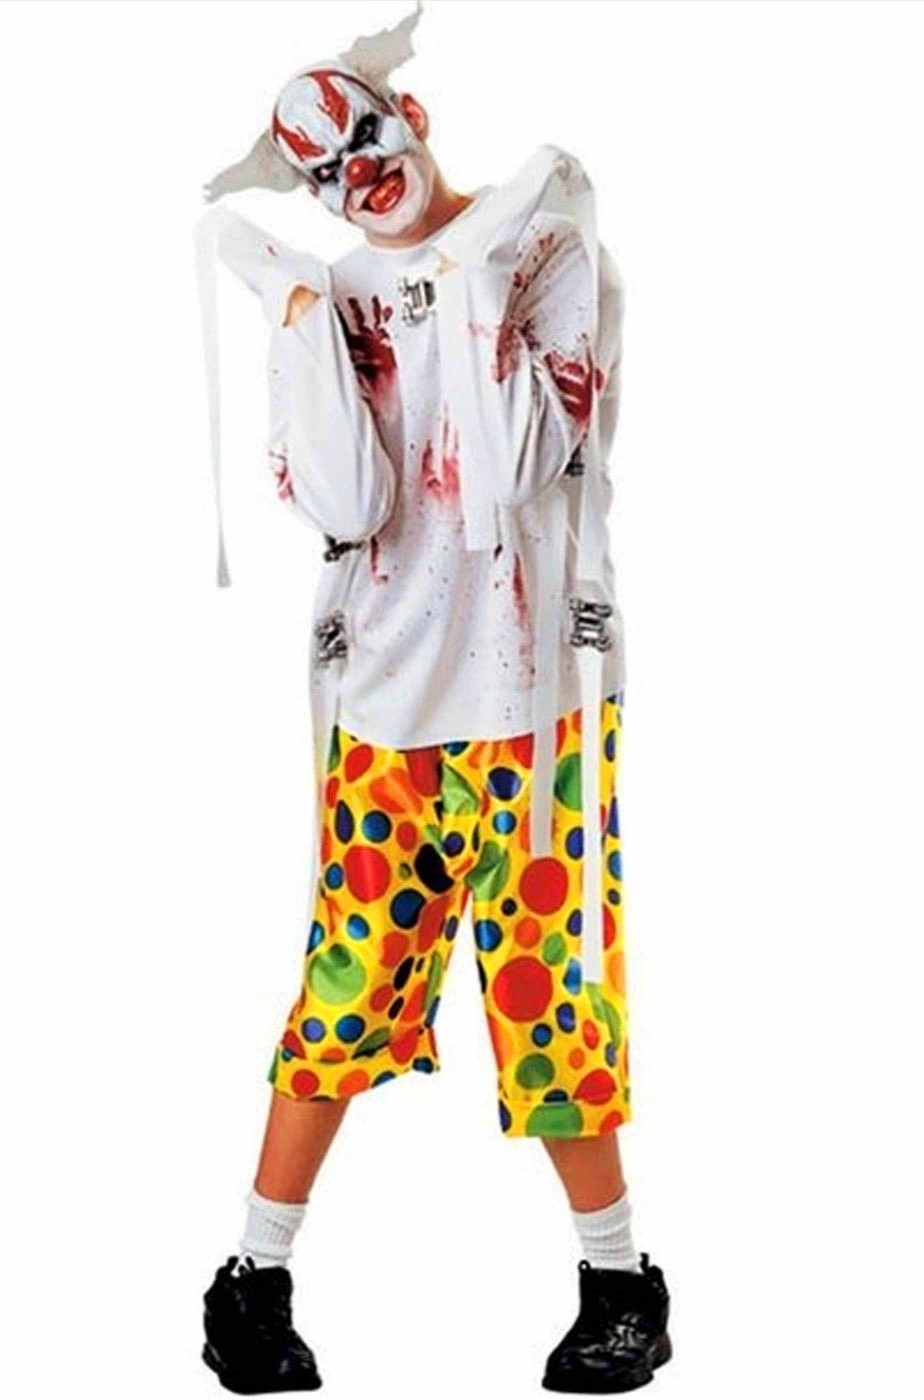 Clown Horror costume uomo pagliaccio Kill Joy